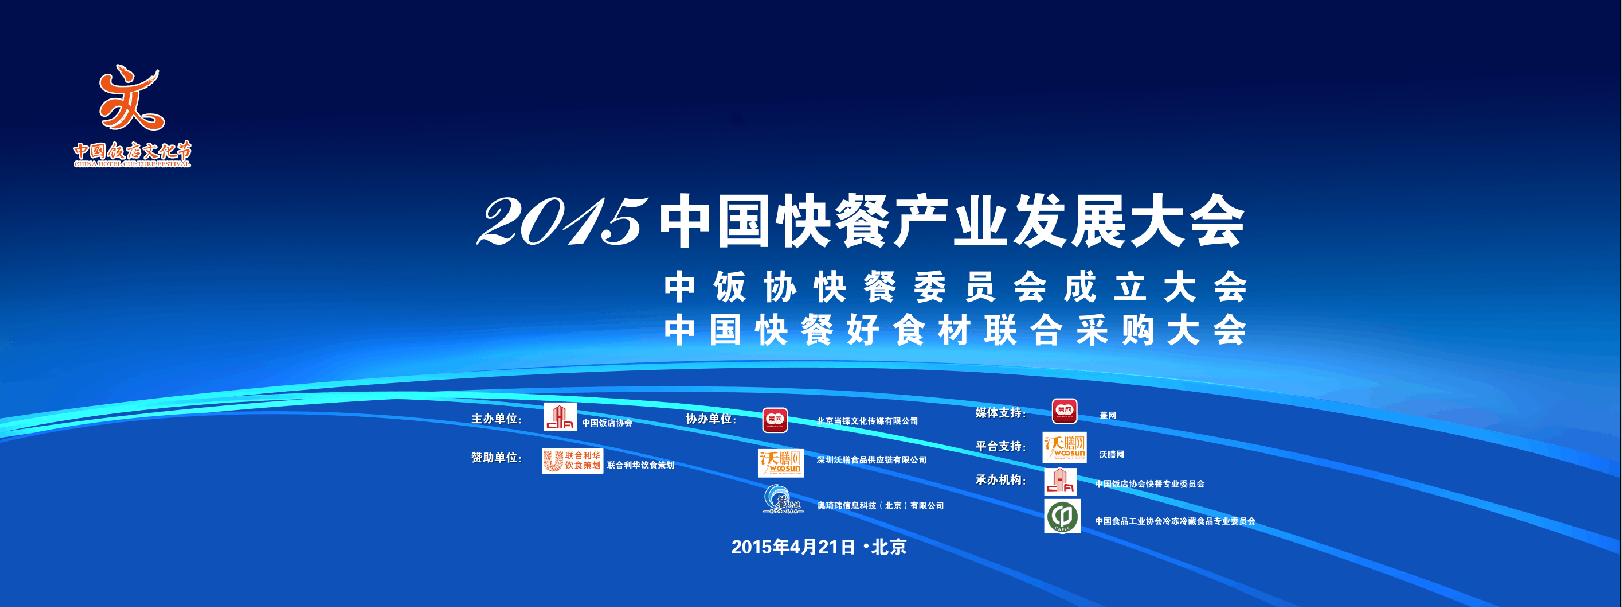 2015年中國快餐產業發展大會